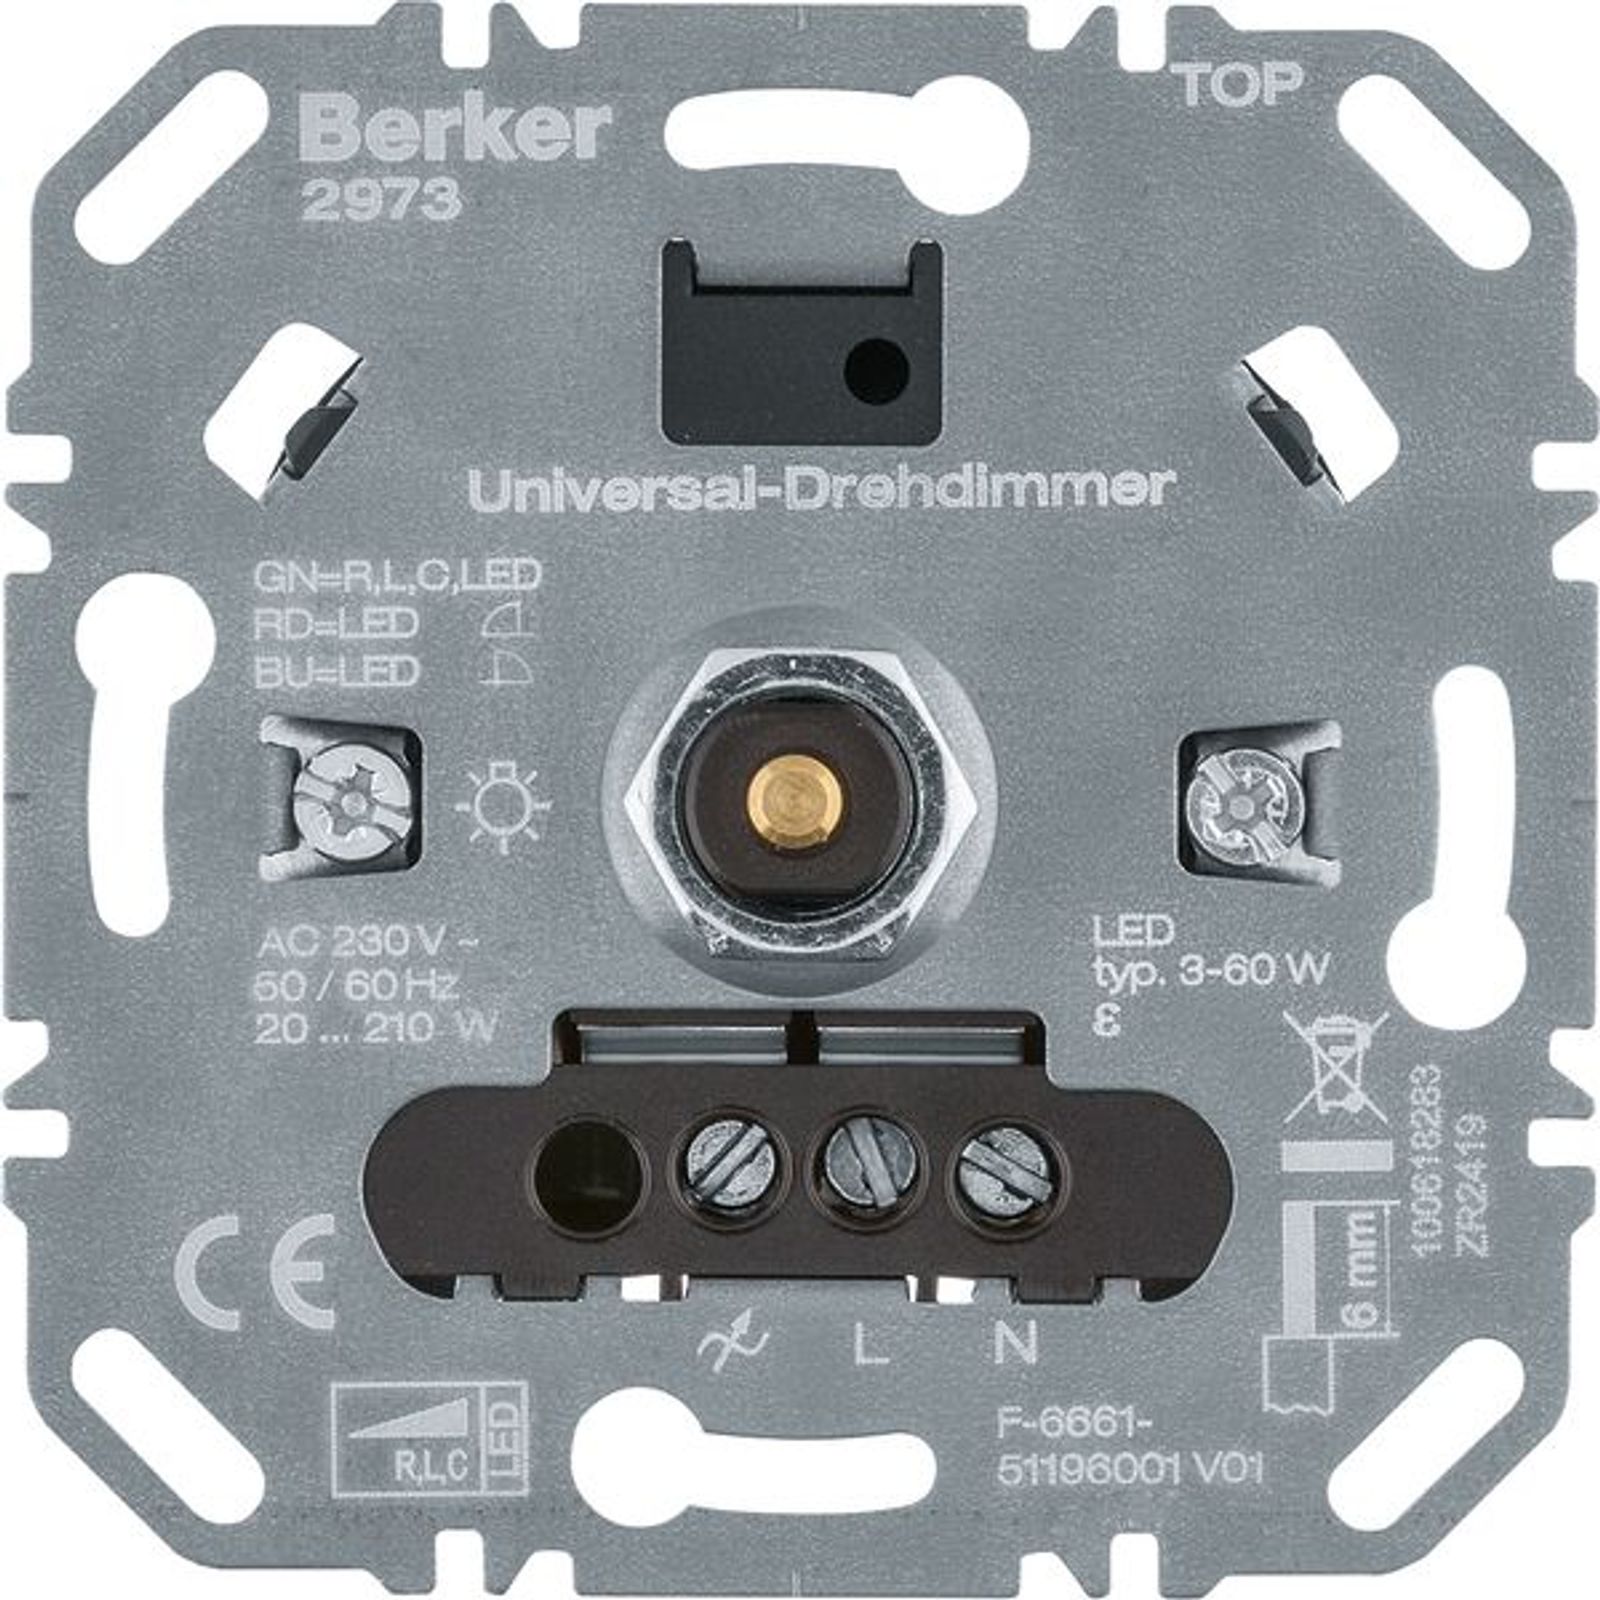 Berker 2973 Universal-Drehdimmer (R, L, C, LED), Lichsteuerung